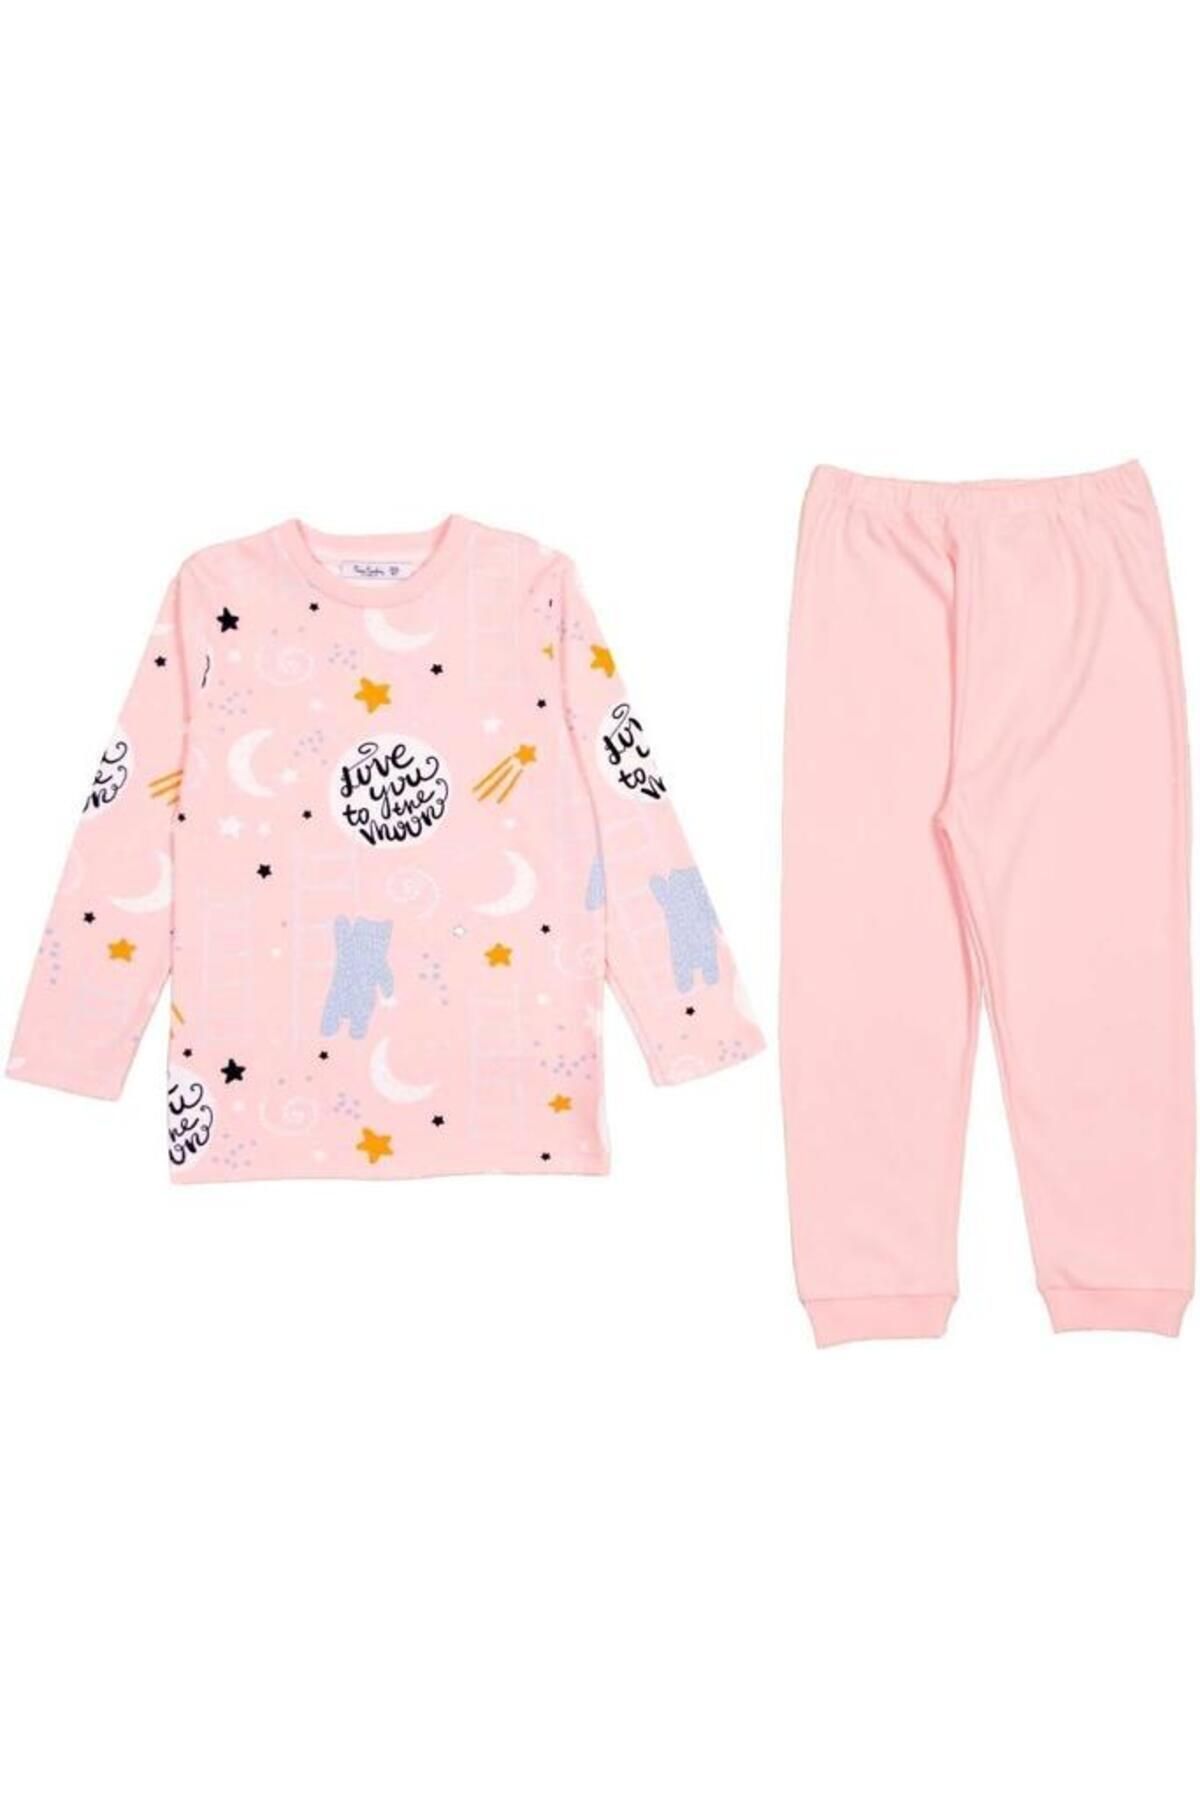 Pierre Cardin Çocuk Pijama Takımı